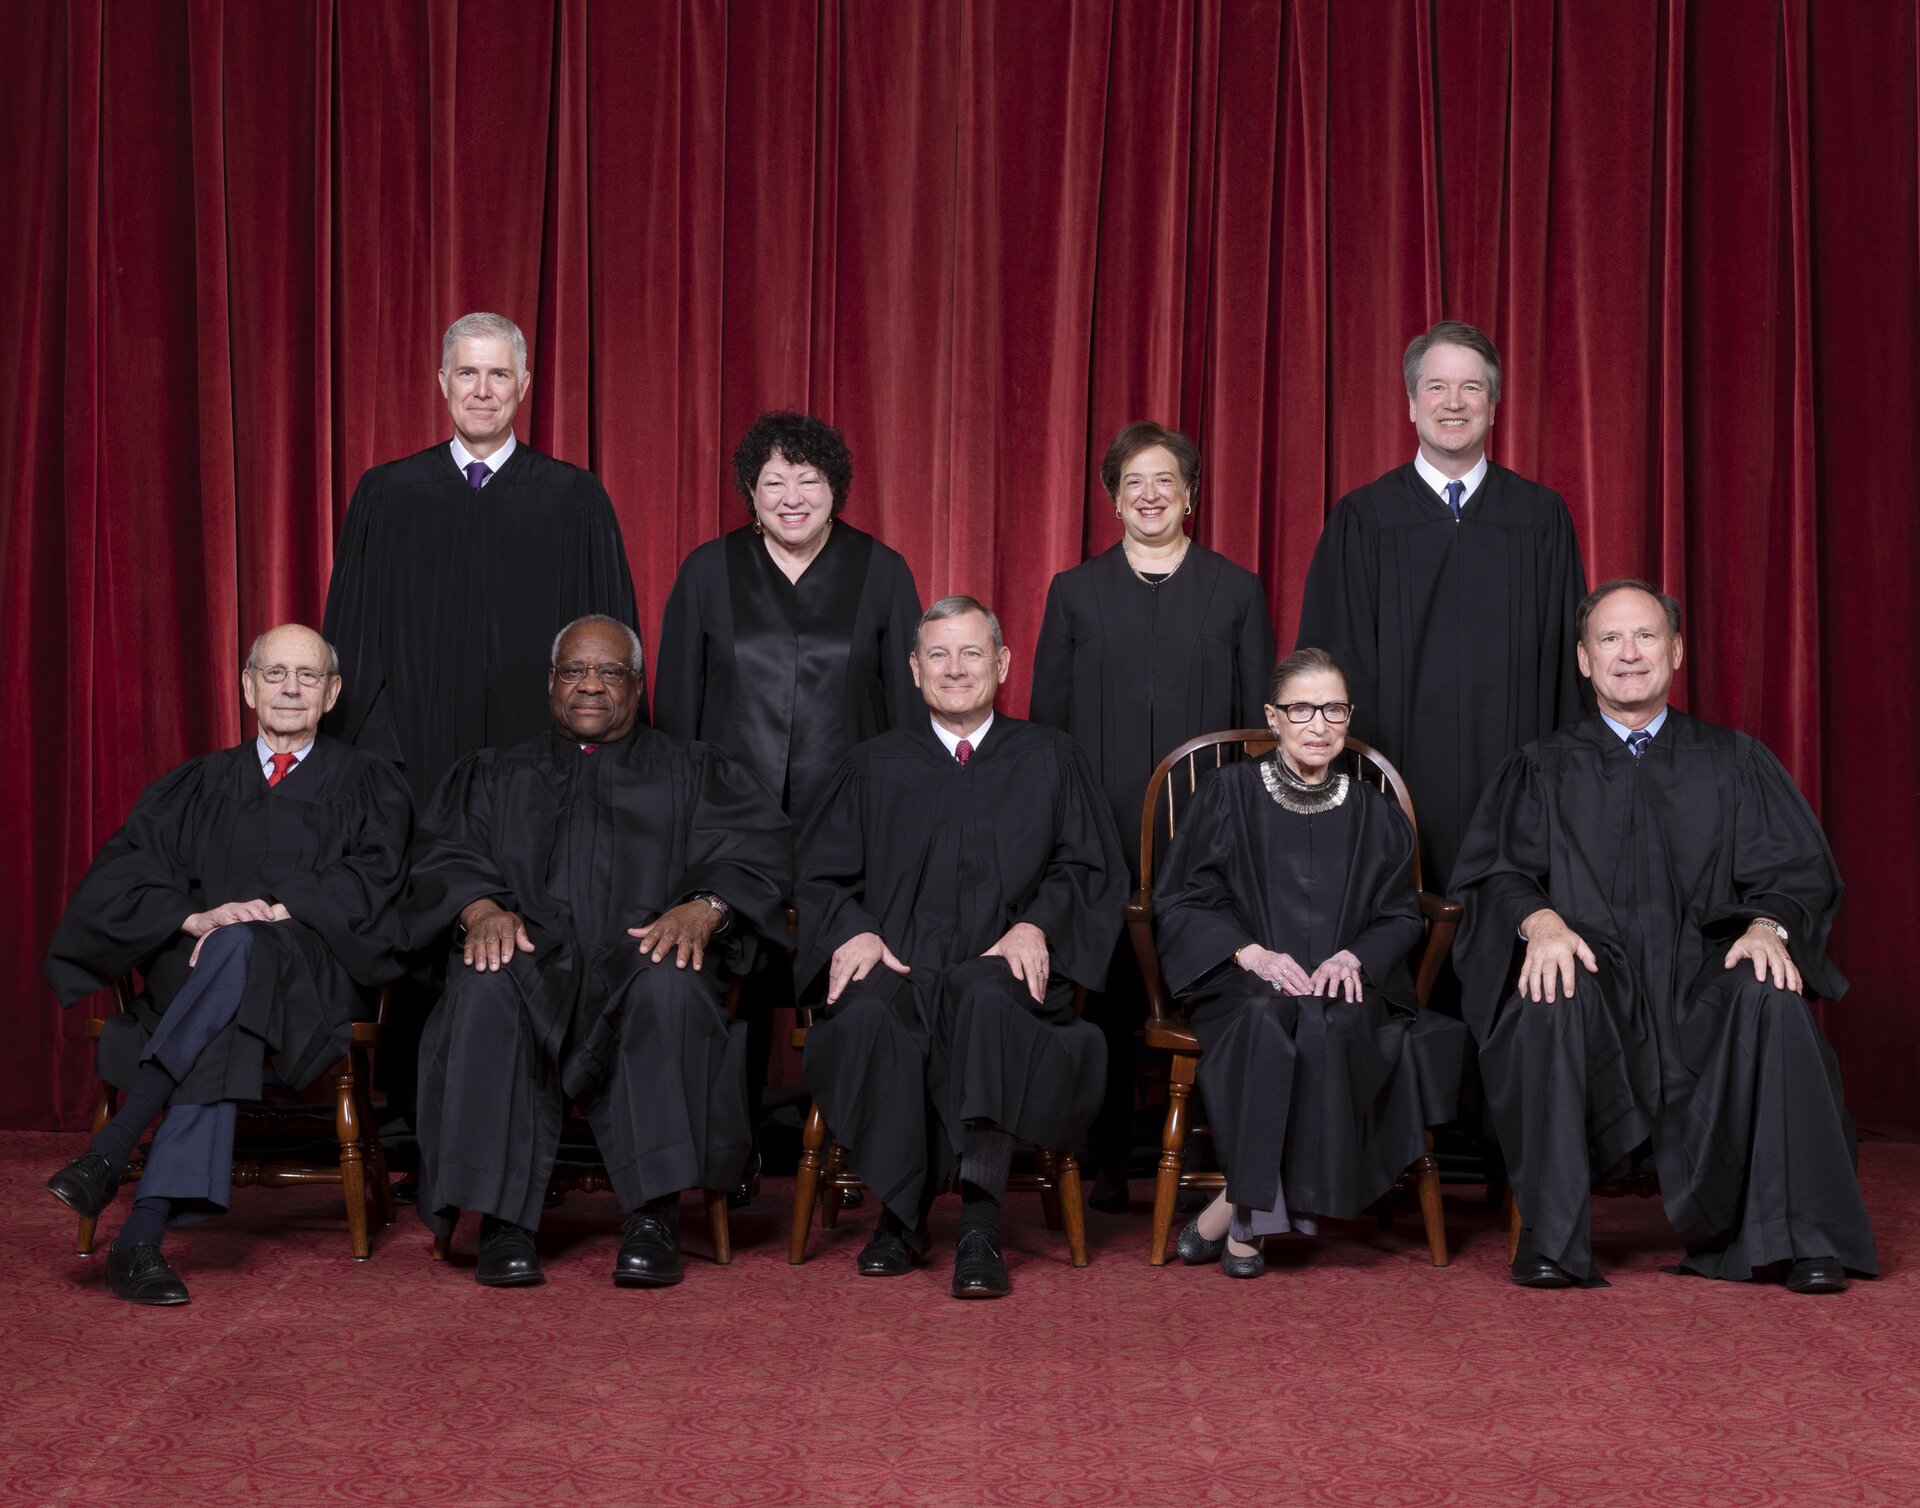 Zdjęcie przedstawia grupę ludzi w czarnych togach sędziowskich. Są to trzy kobiety i sześciu mężczyzn. Ludzie są w dwóch rzędach. W pierwszym rzędzie siedzi pięć osób (jedna kobieta i czterech mężczyzn). Za ich plecami stoi czwórka osób - dwie kobiety i dwóch mężczyzn.